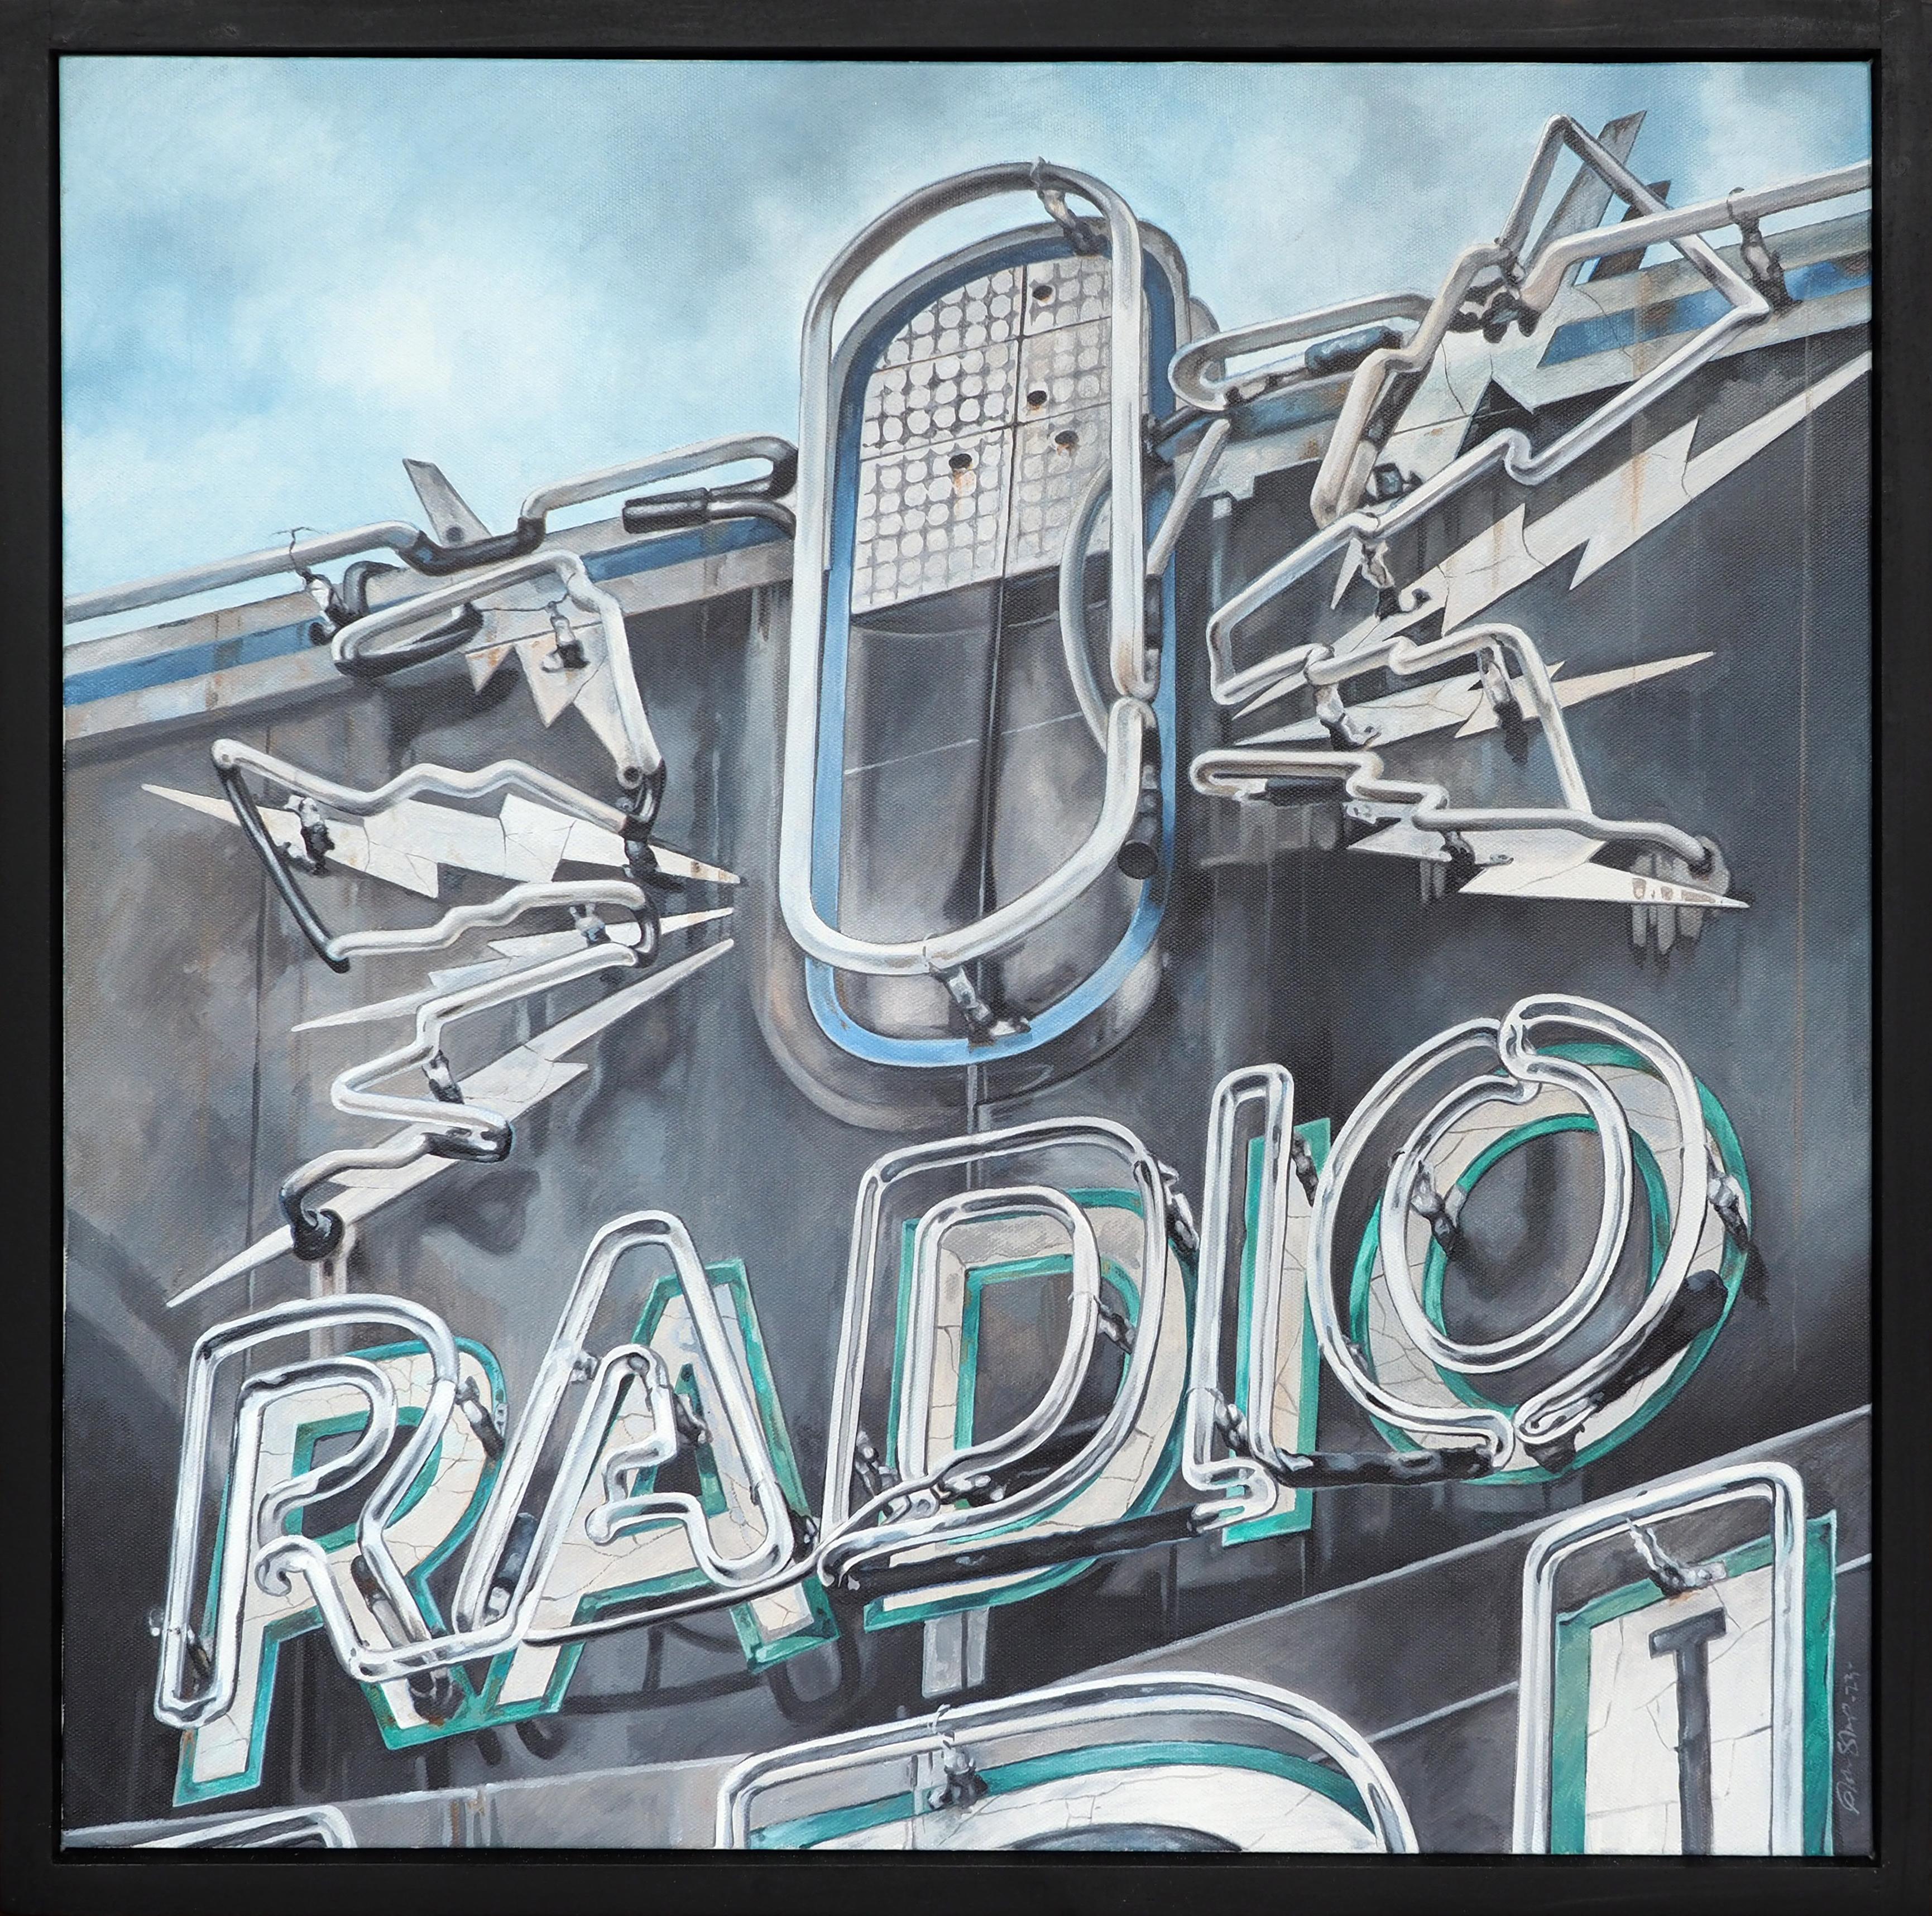 Radio Radio - Painting by John Sharp